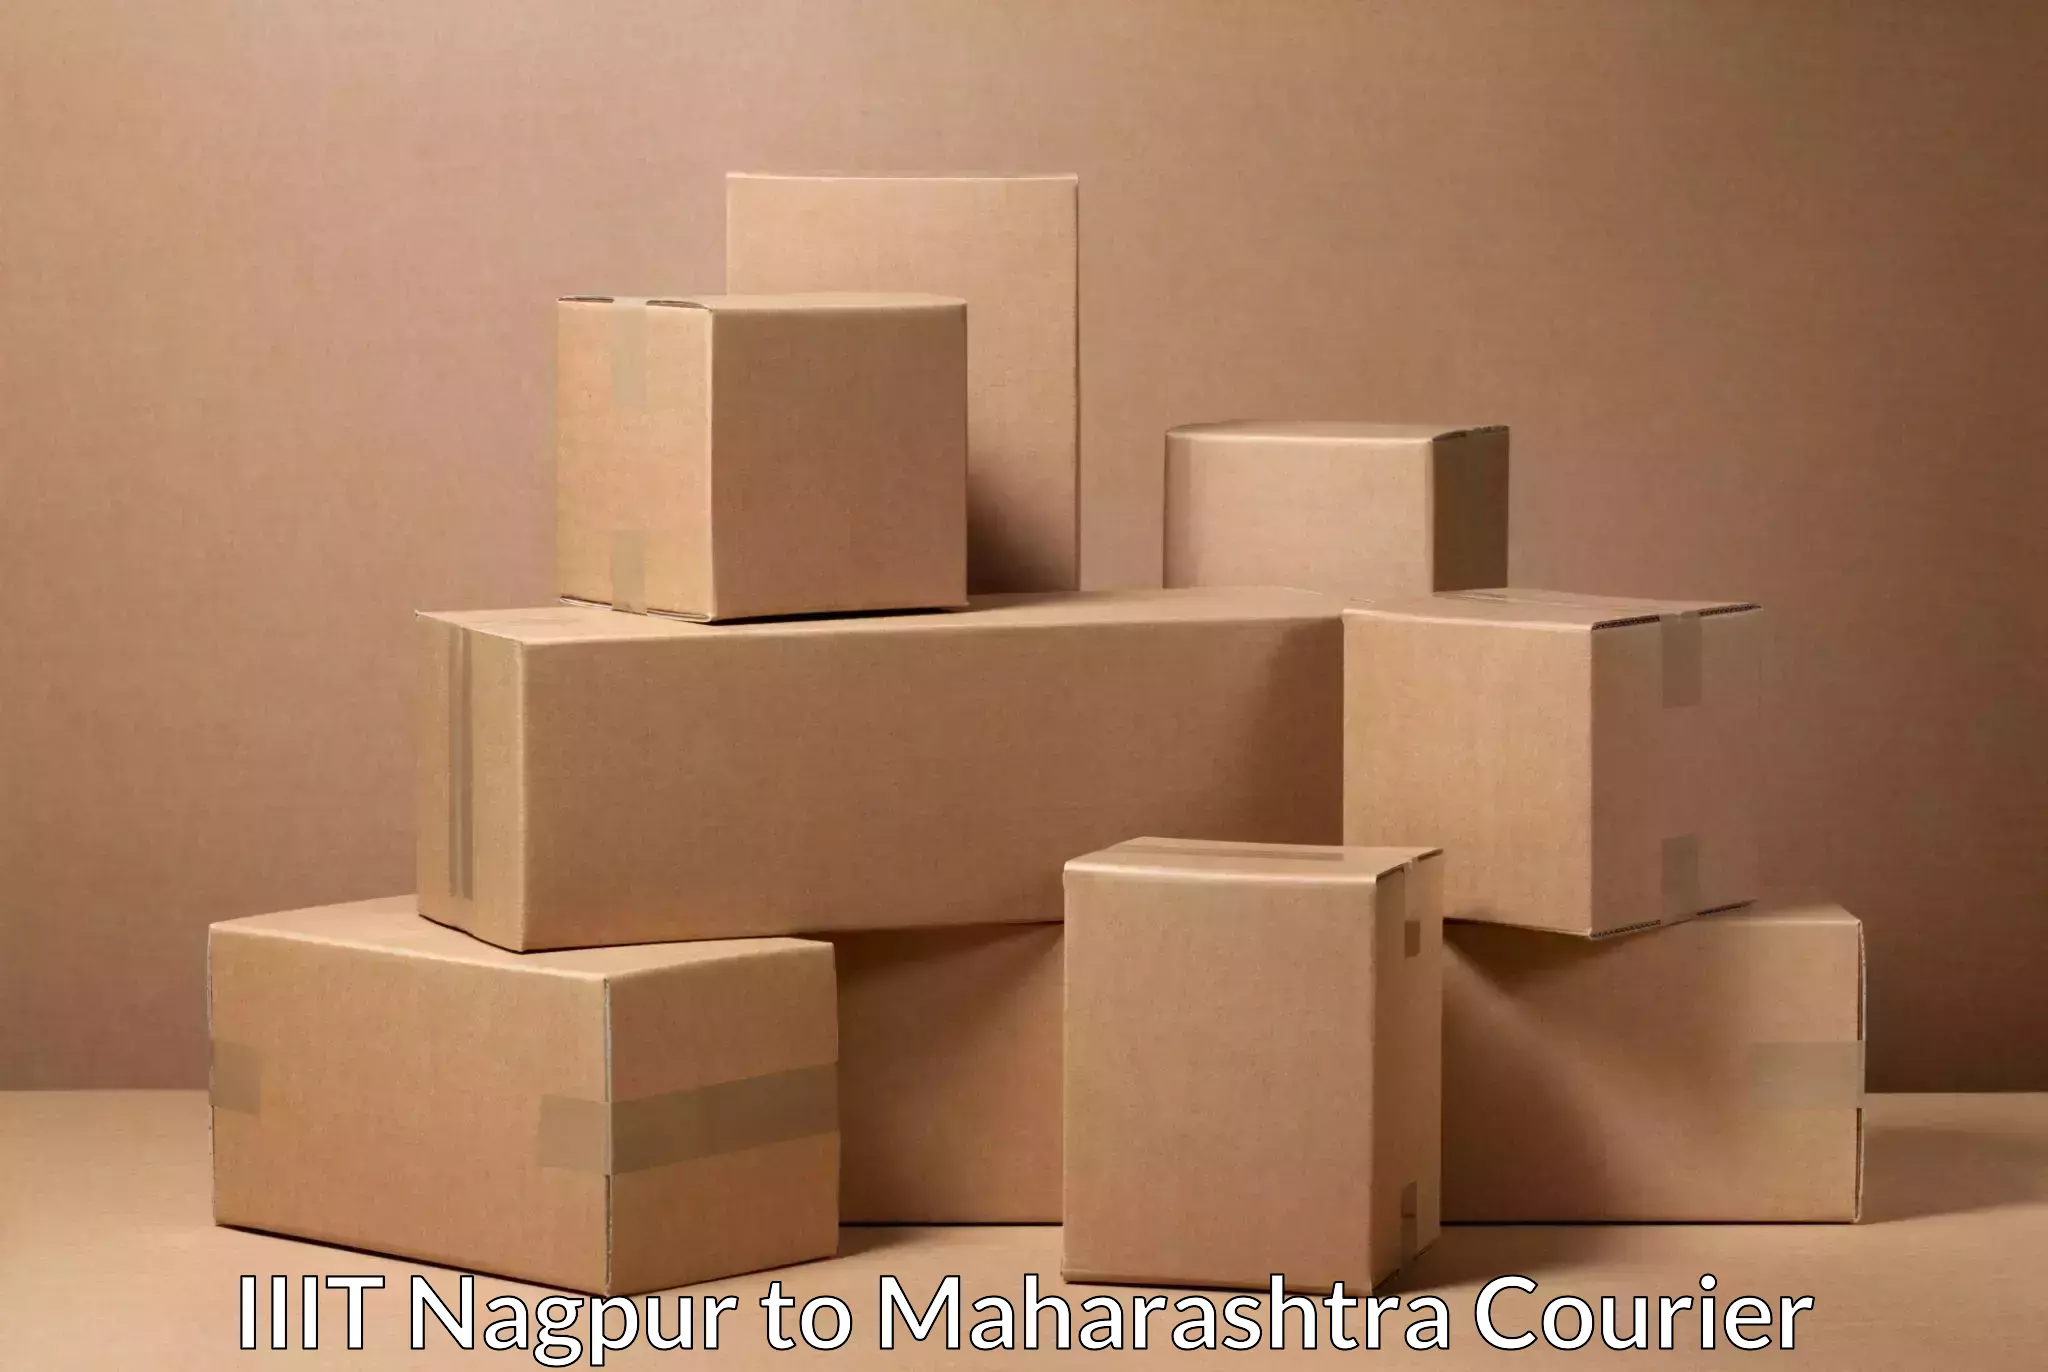 Flexible parcel services in IIIT Nagpur to Aurangabad